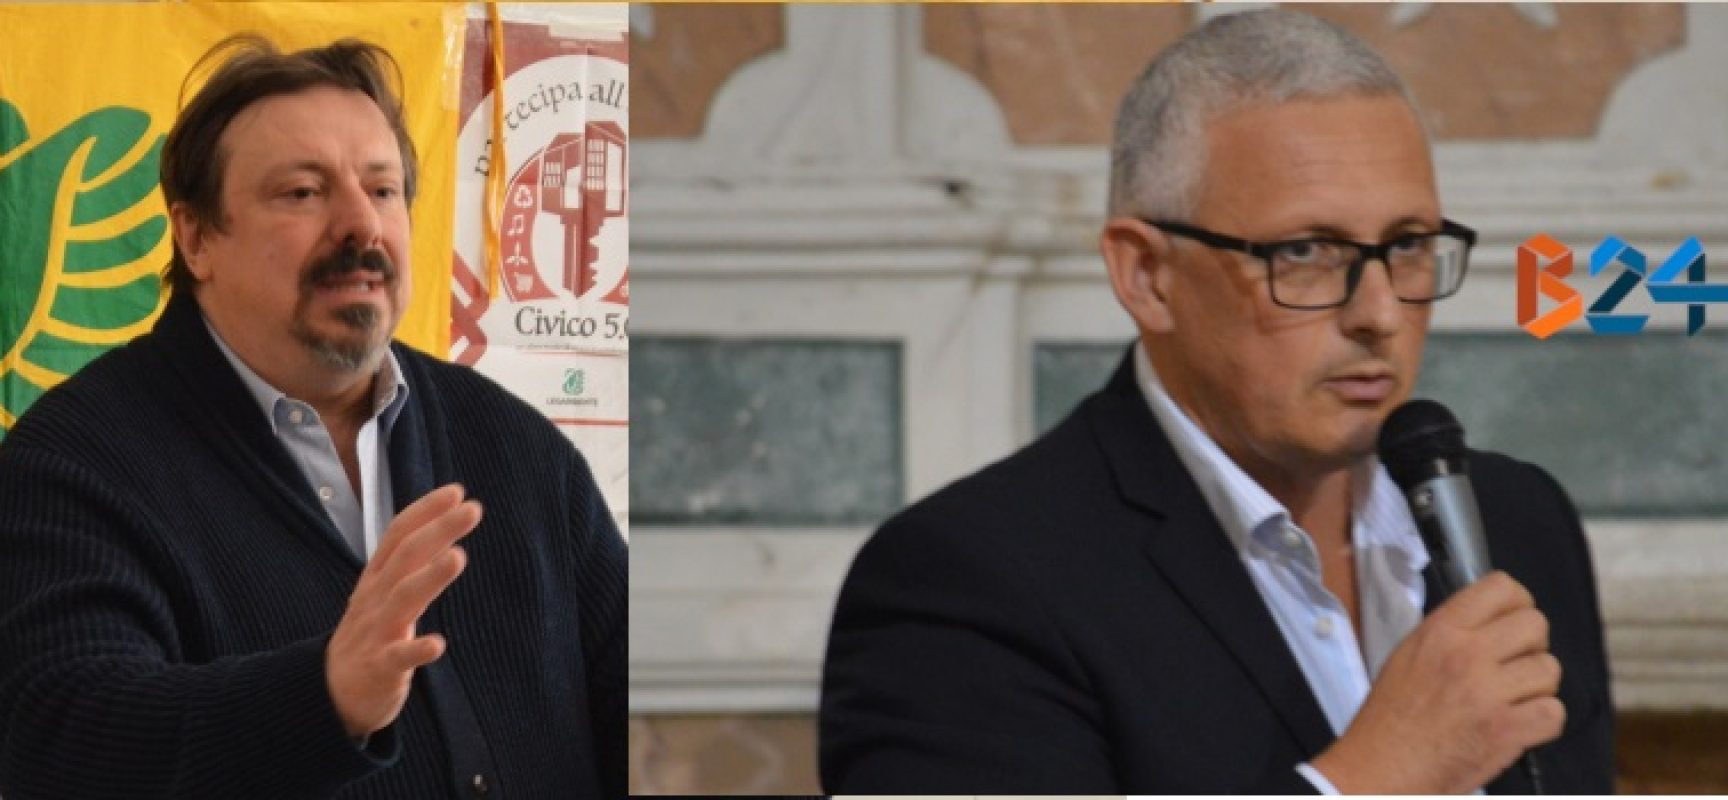 Legambiente Bisceglie: “Caro vice sindaco, il Premio Comune Riciclone non le spettava”